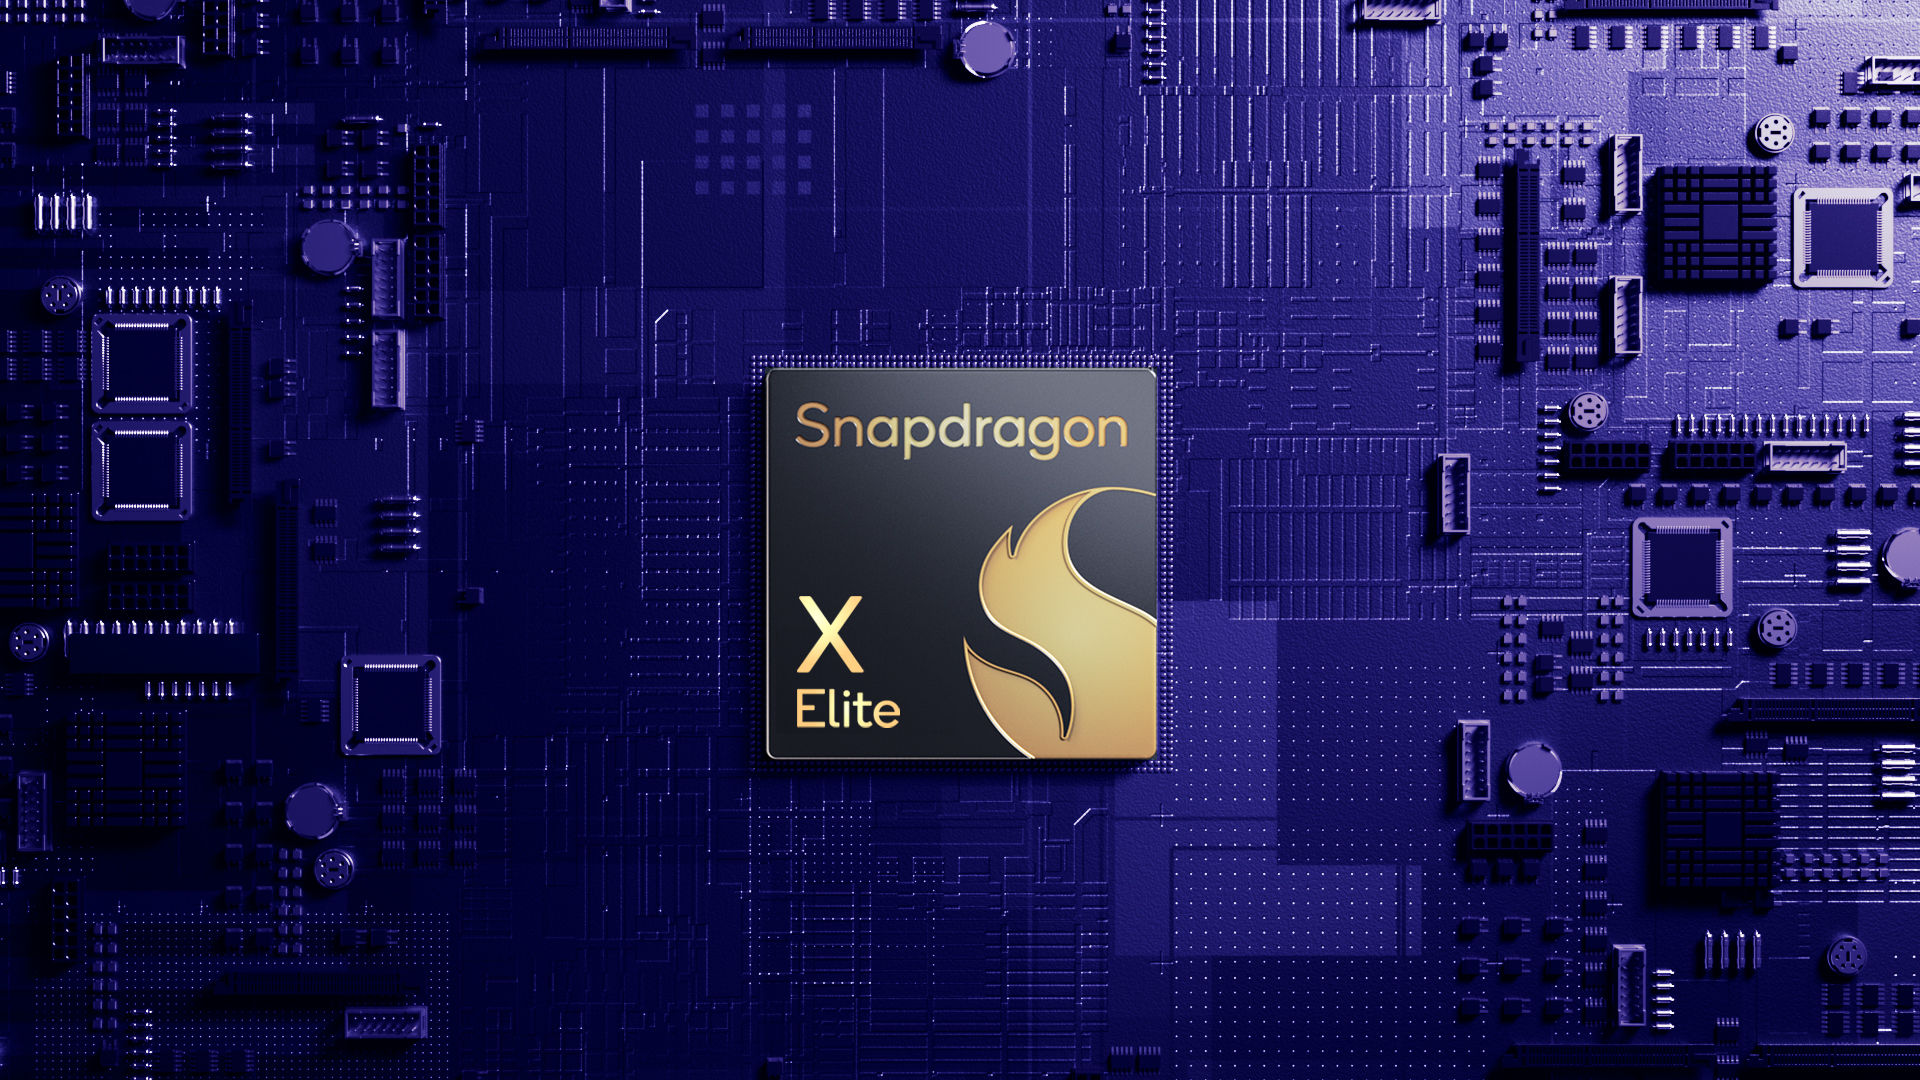 Snapdragon X Elite wykazuje 49% wzrost wydajności